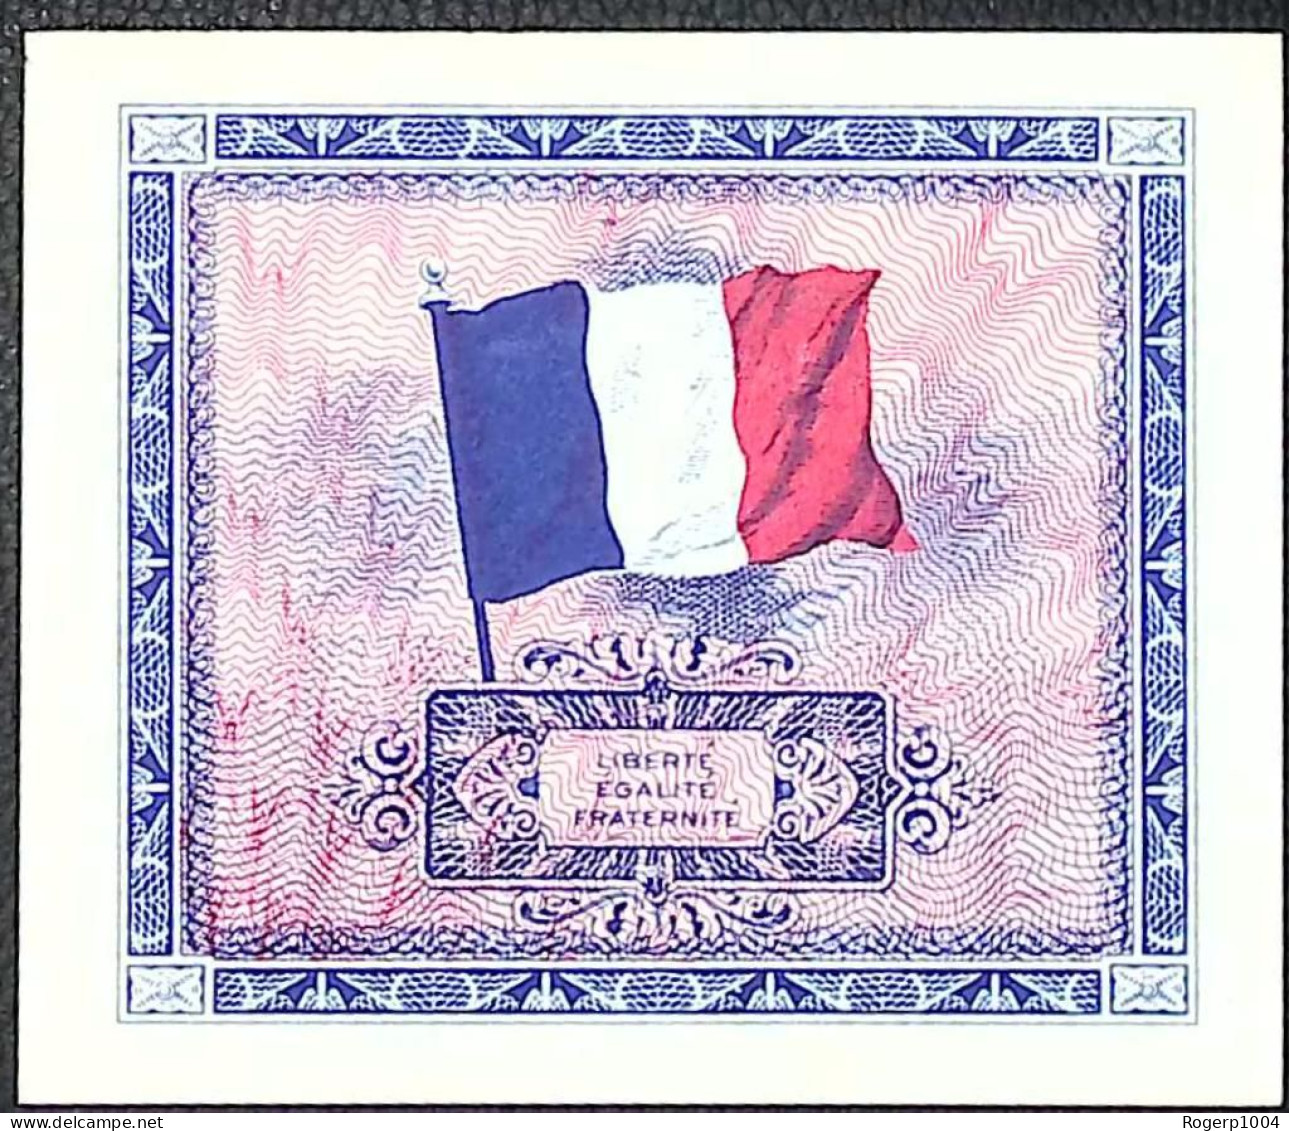 FRANCE * Billets Du Trésor * 5 Francs Drapeau * 1944 * Sans Série * Etat/Grade NEUF/UNC - 1944 Drapeau/Francia